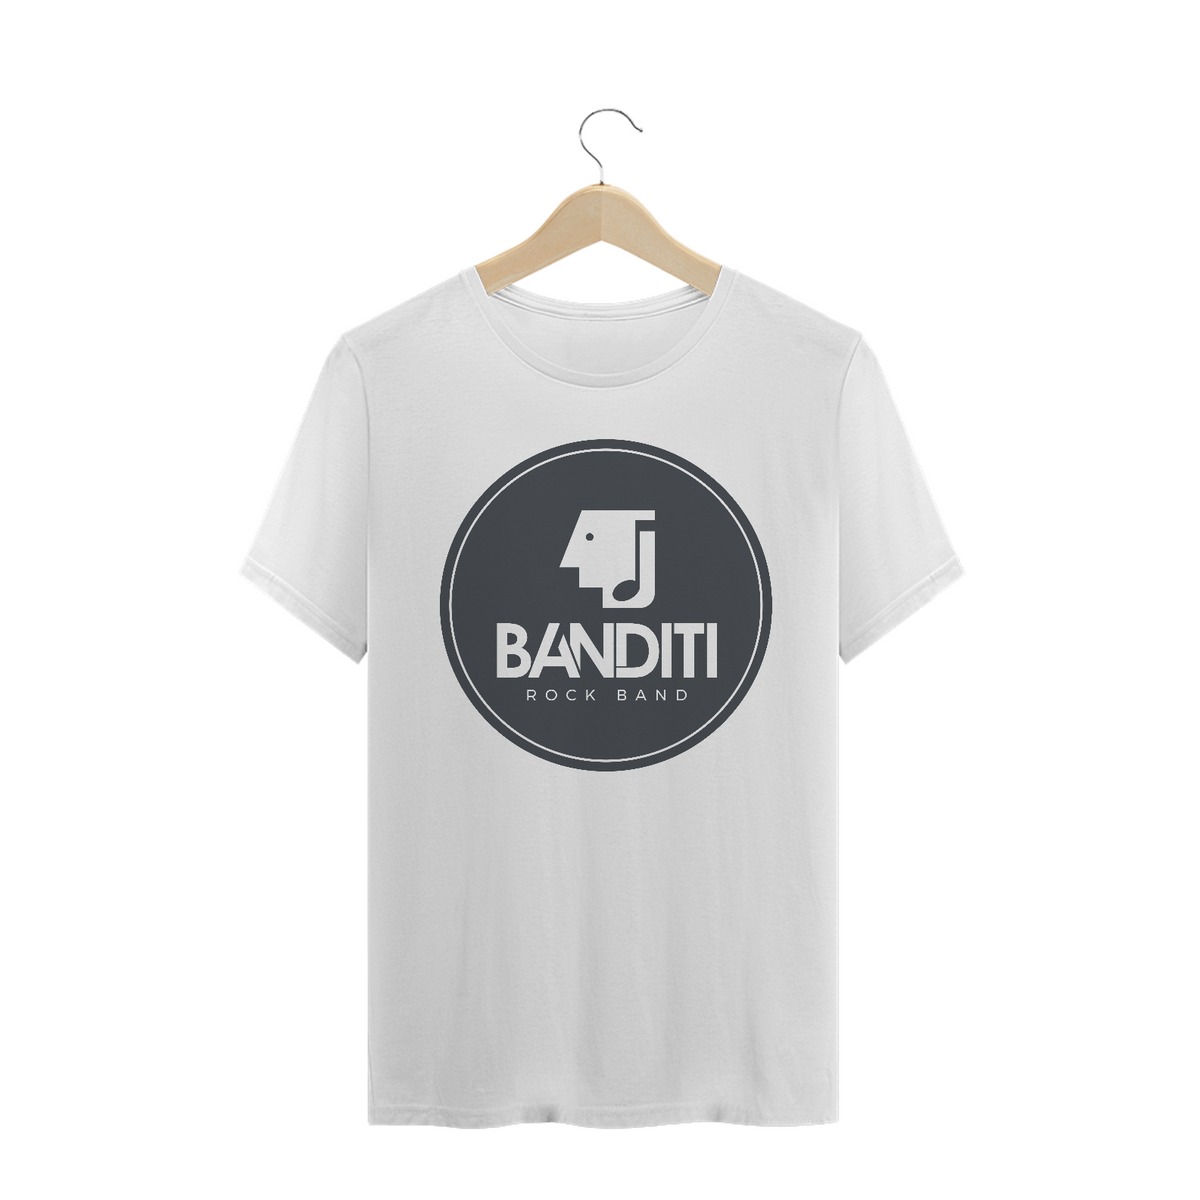 Nome do produto: Camiseta - Banditi Rock Band